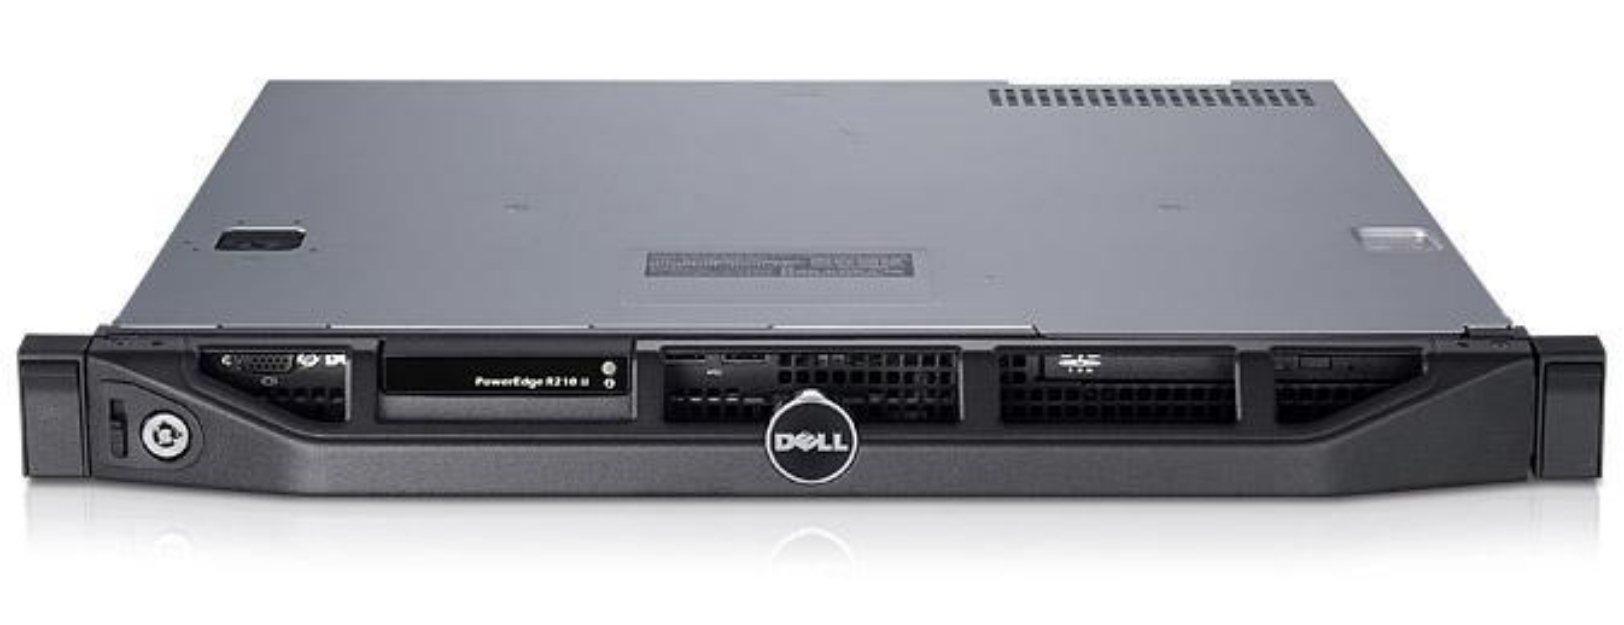 Vendo Server Dell PowerEdge R210